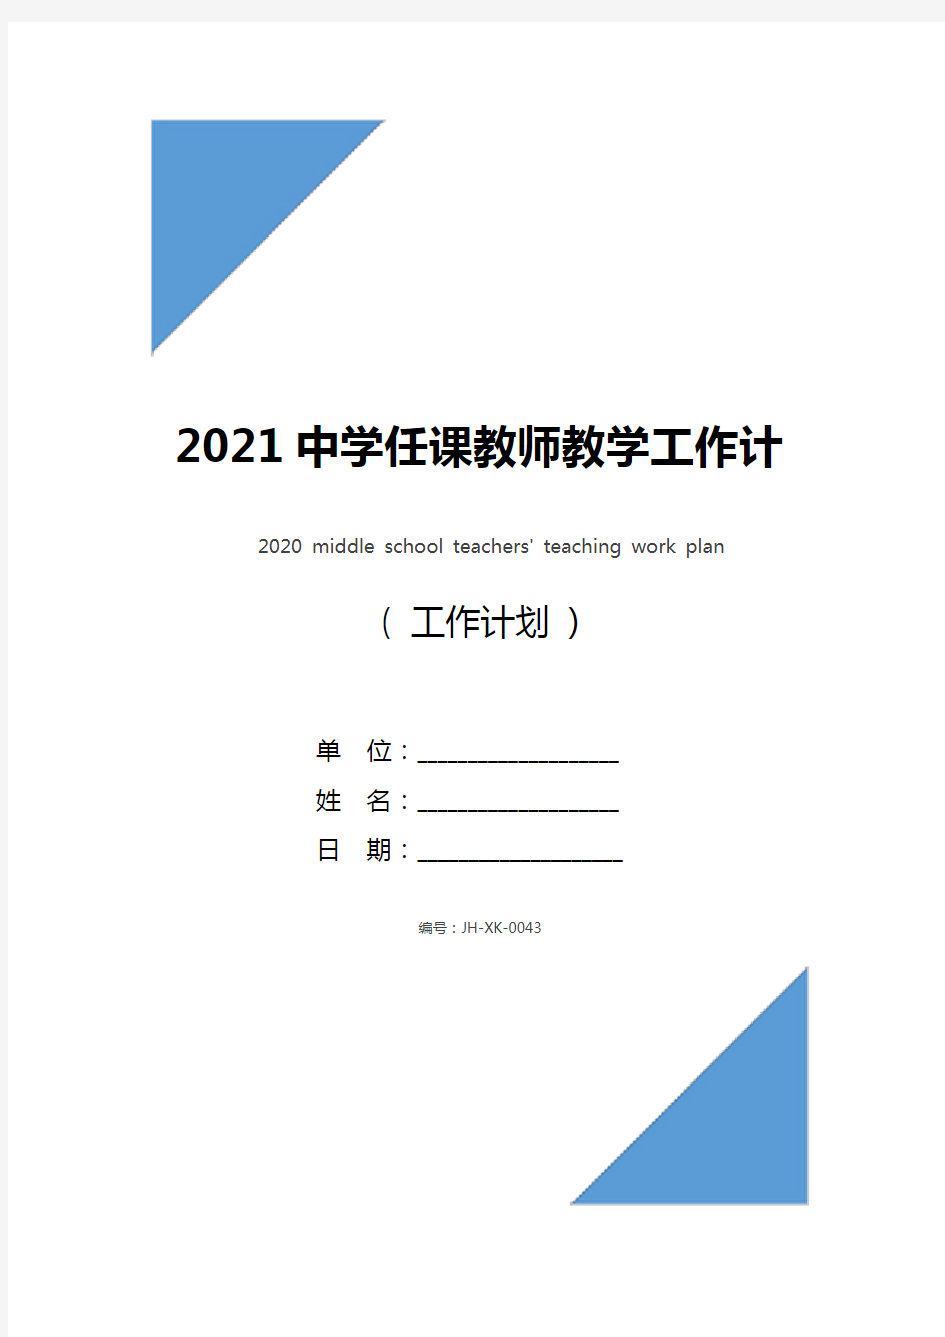 2021中学任课教师教学工作计划(新编版)